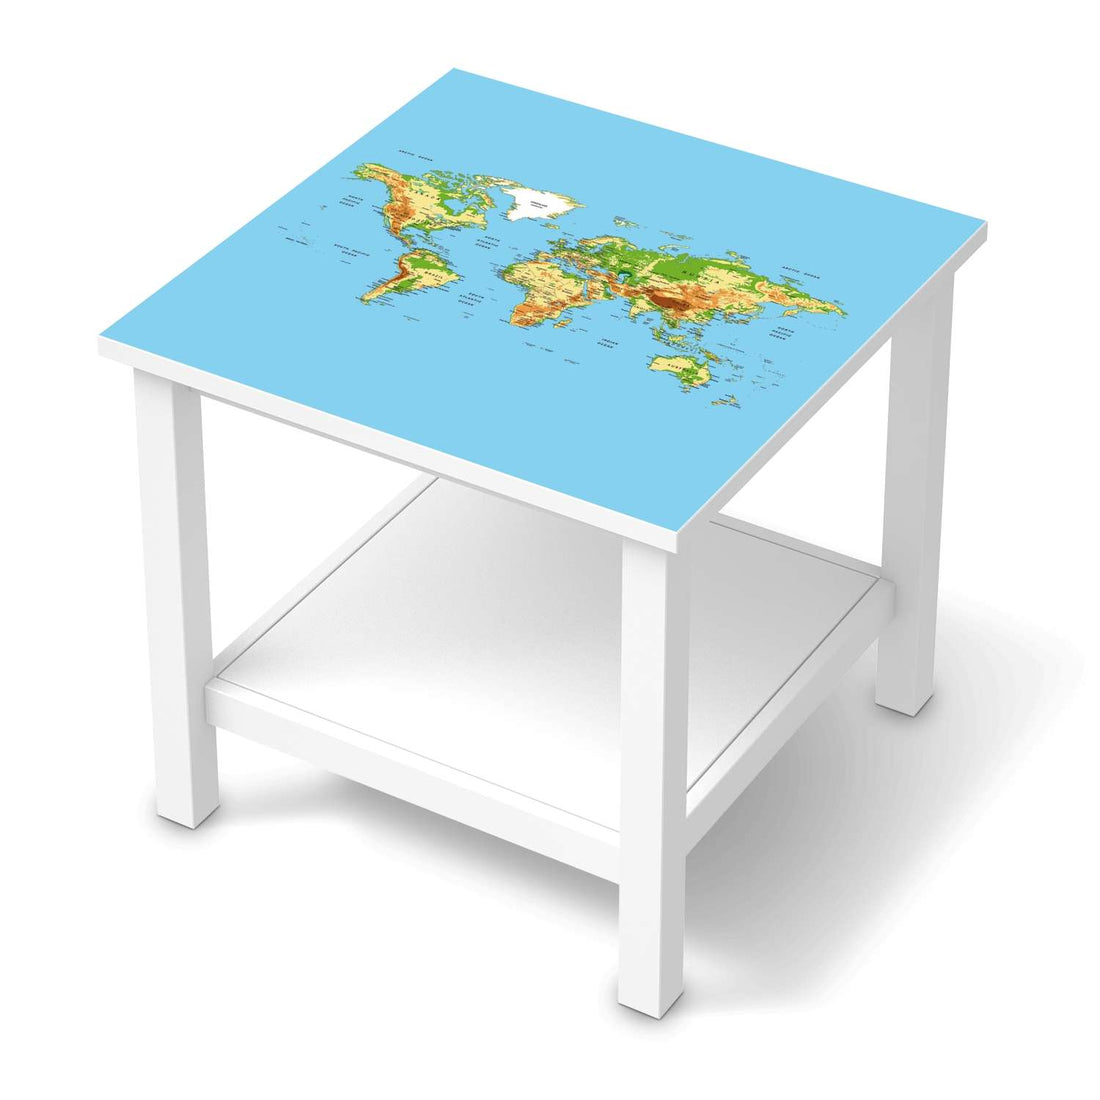 Möbel Klebefolie Geografische Weltkarte - IKEA Hemnes Beistelltisch 55x55 cm  - weiss